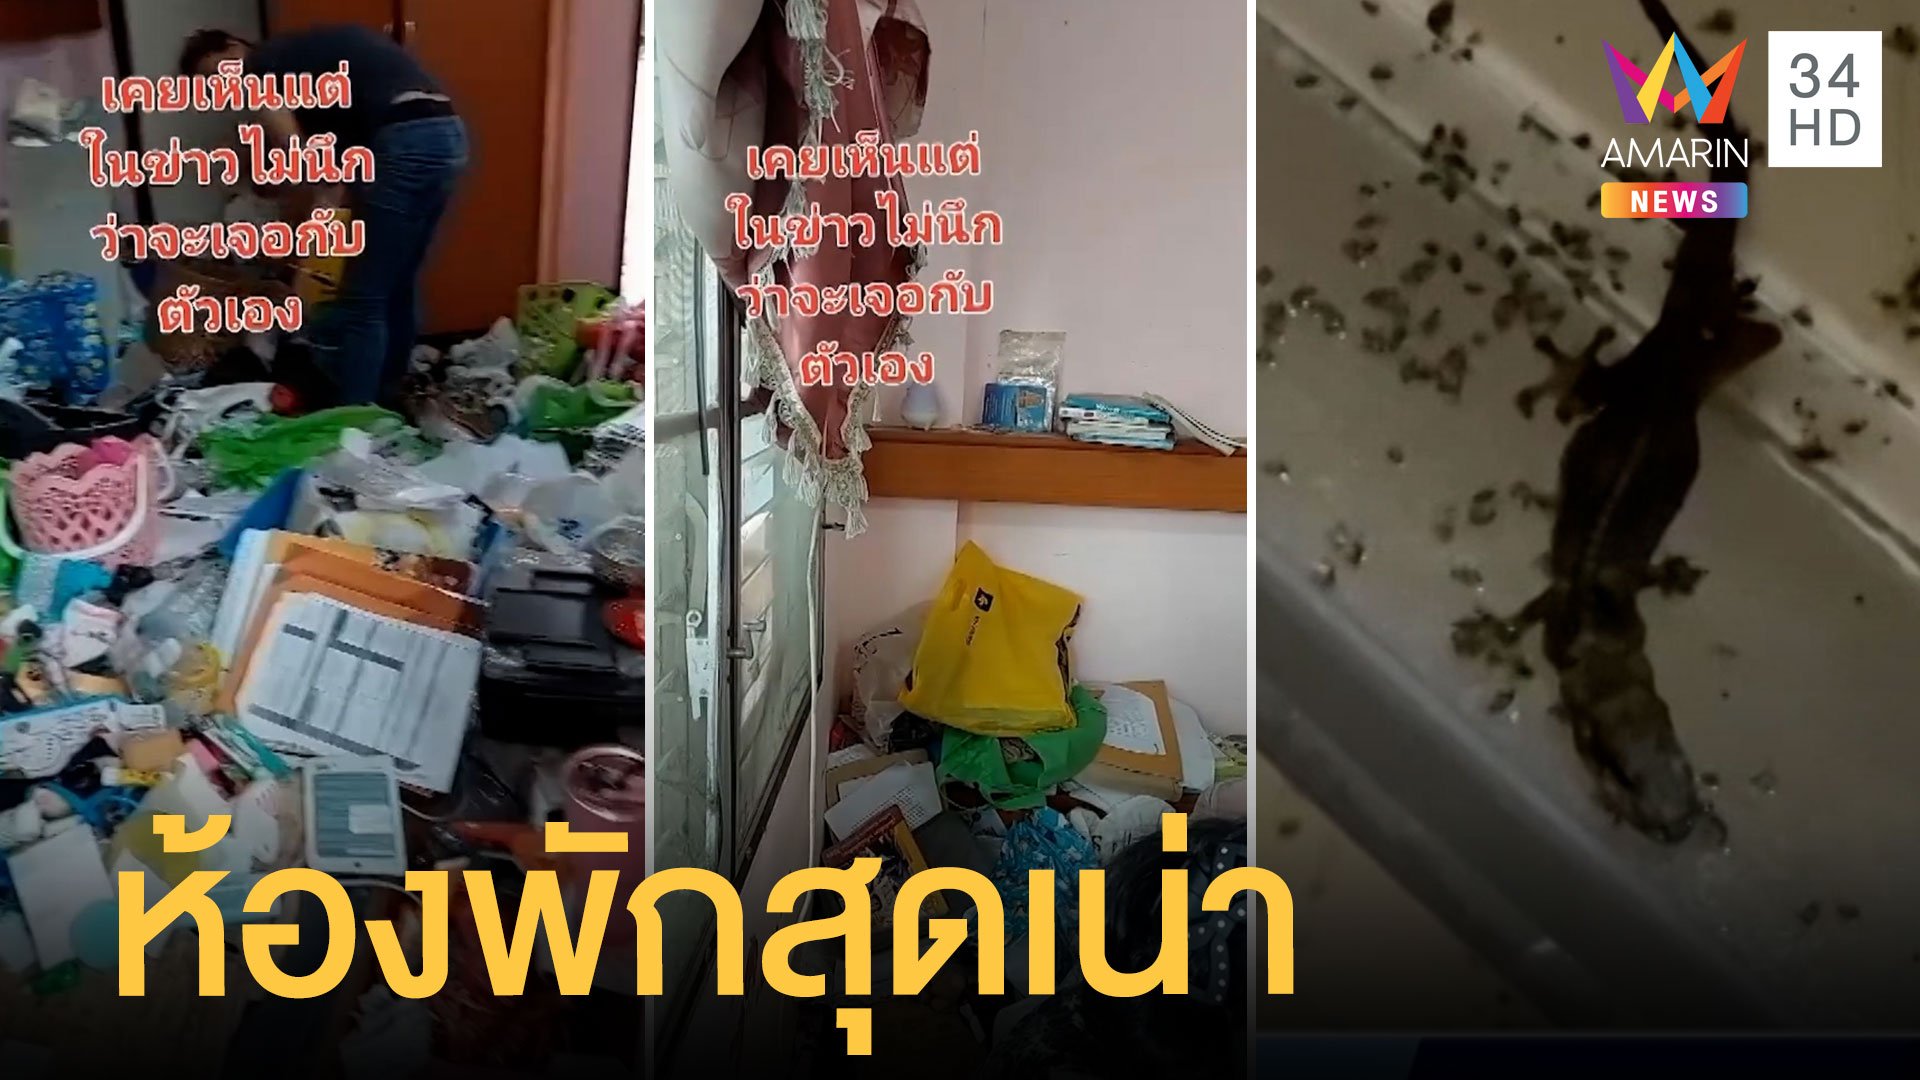 ผงะแรง นักศึกษา ป.โท ปล่อยห้องเน่าขยะเกลื่อนห้อง | ข่าวเที่ยงอมรินทร์ | 9 มิ.ย. 65 | AMARIN TVHD34